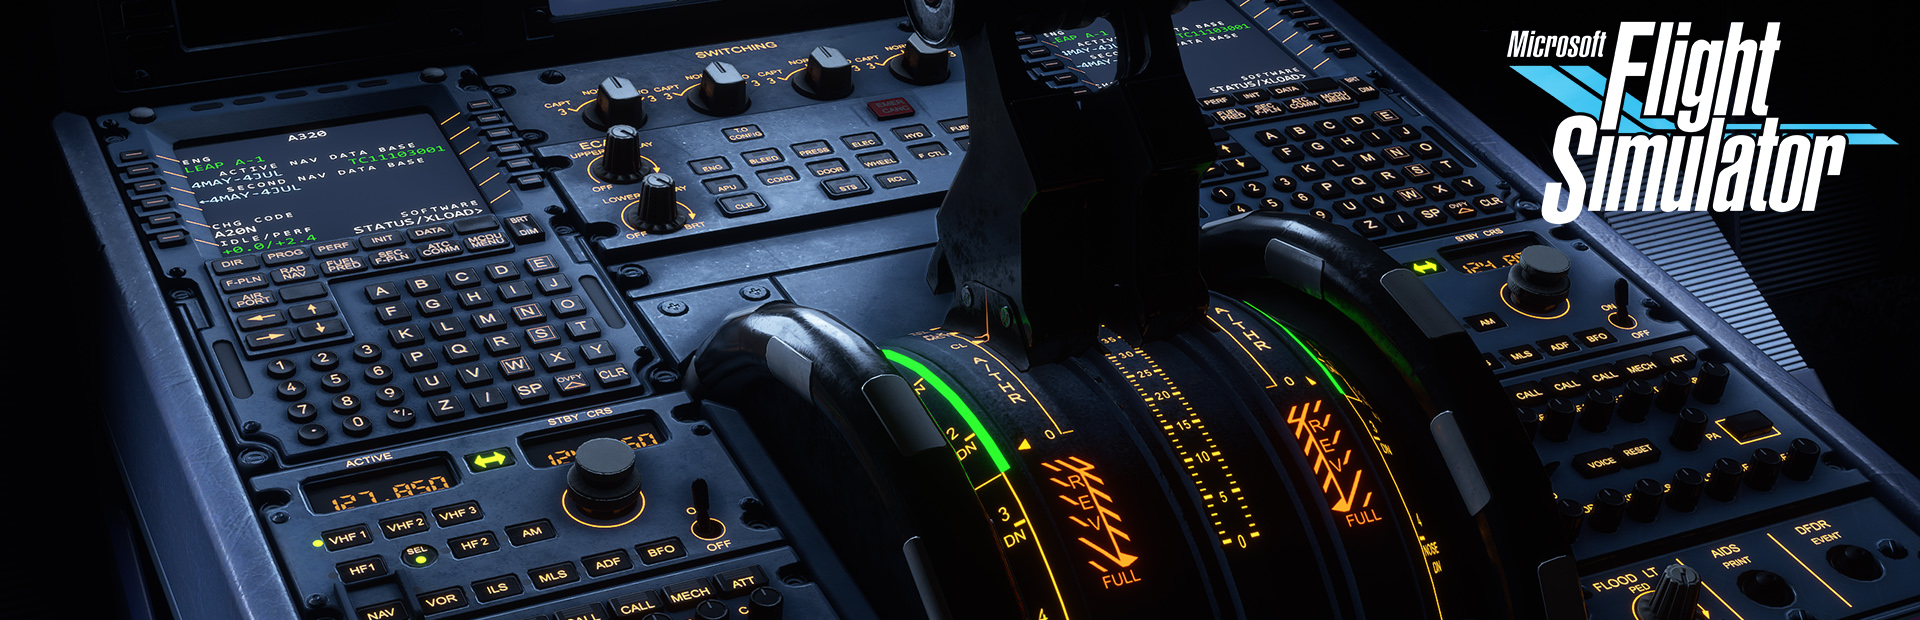 دانلود بازی Microsoft Flight Simulator برای PC | گیمباتو